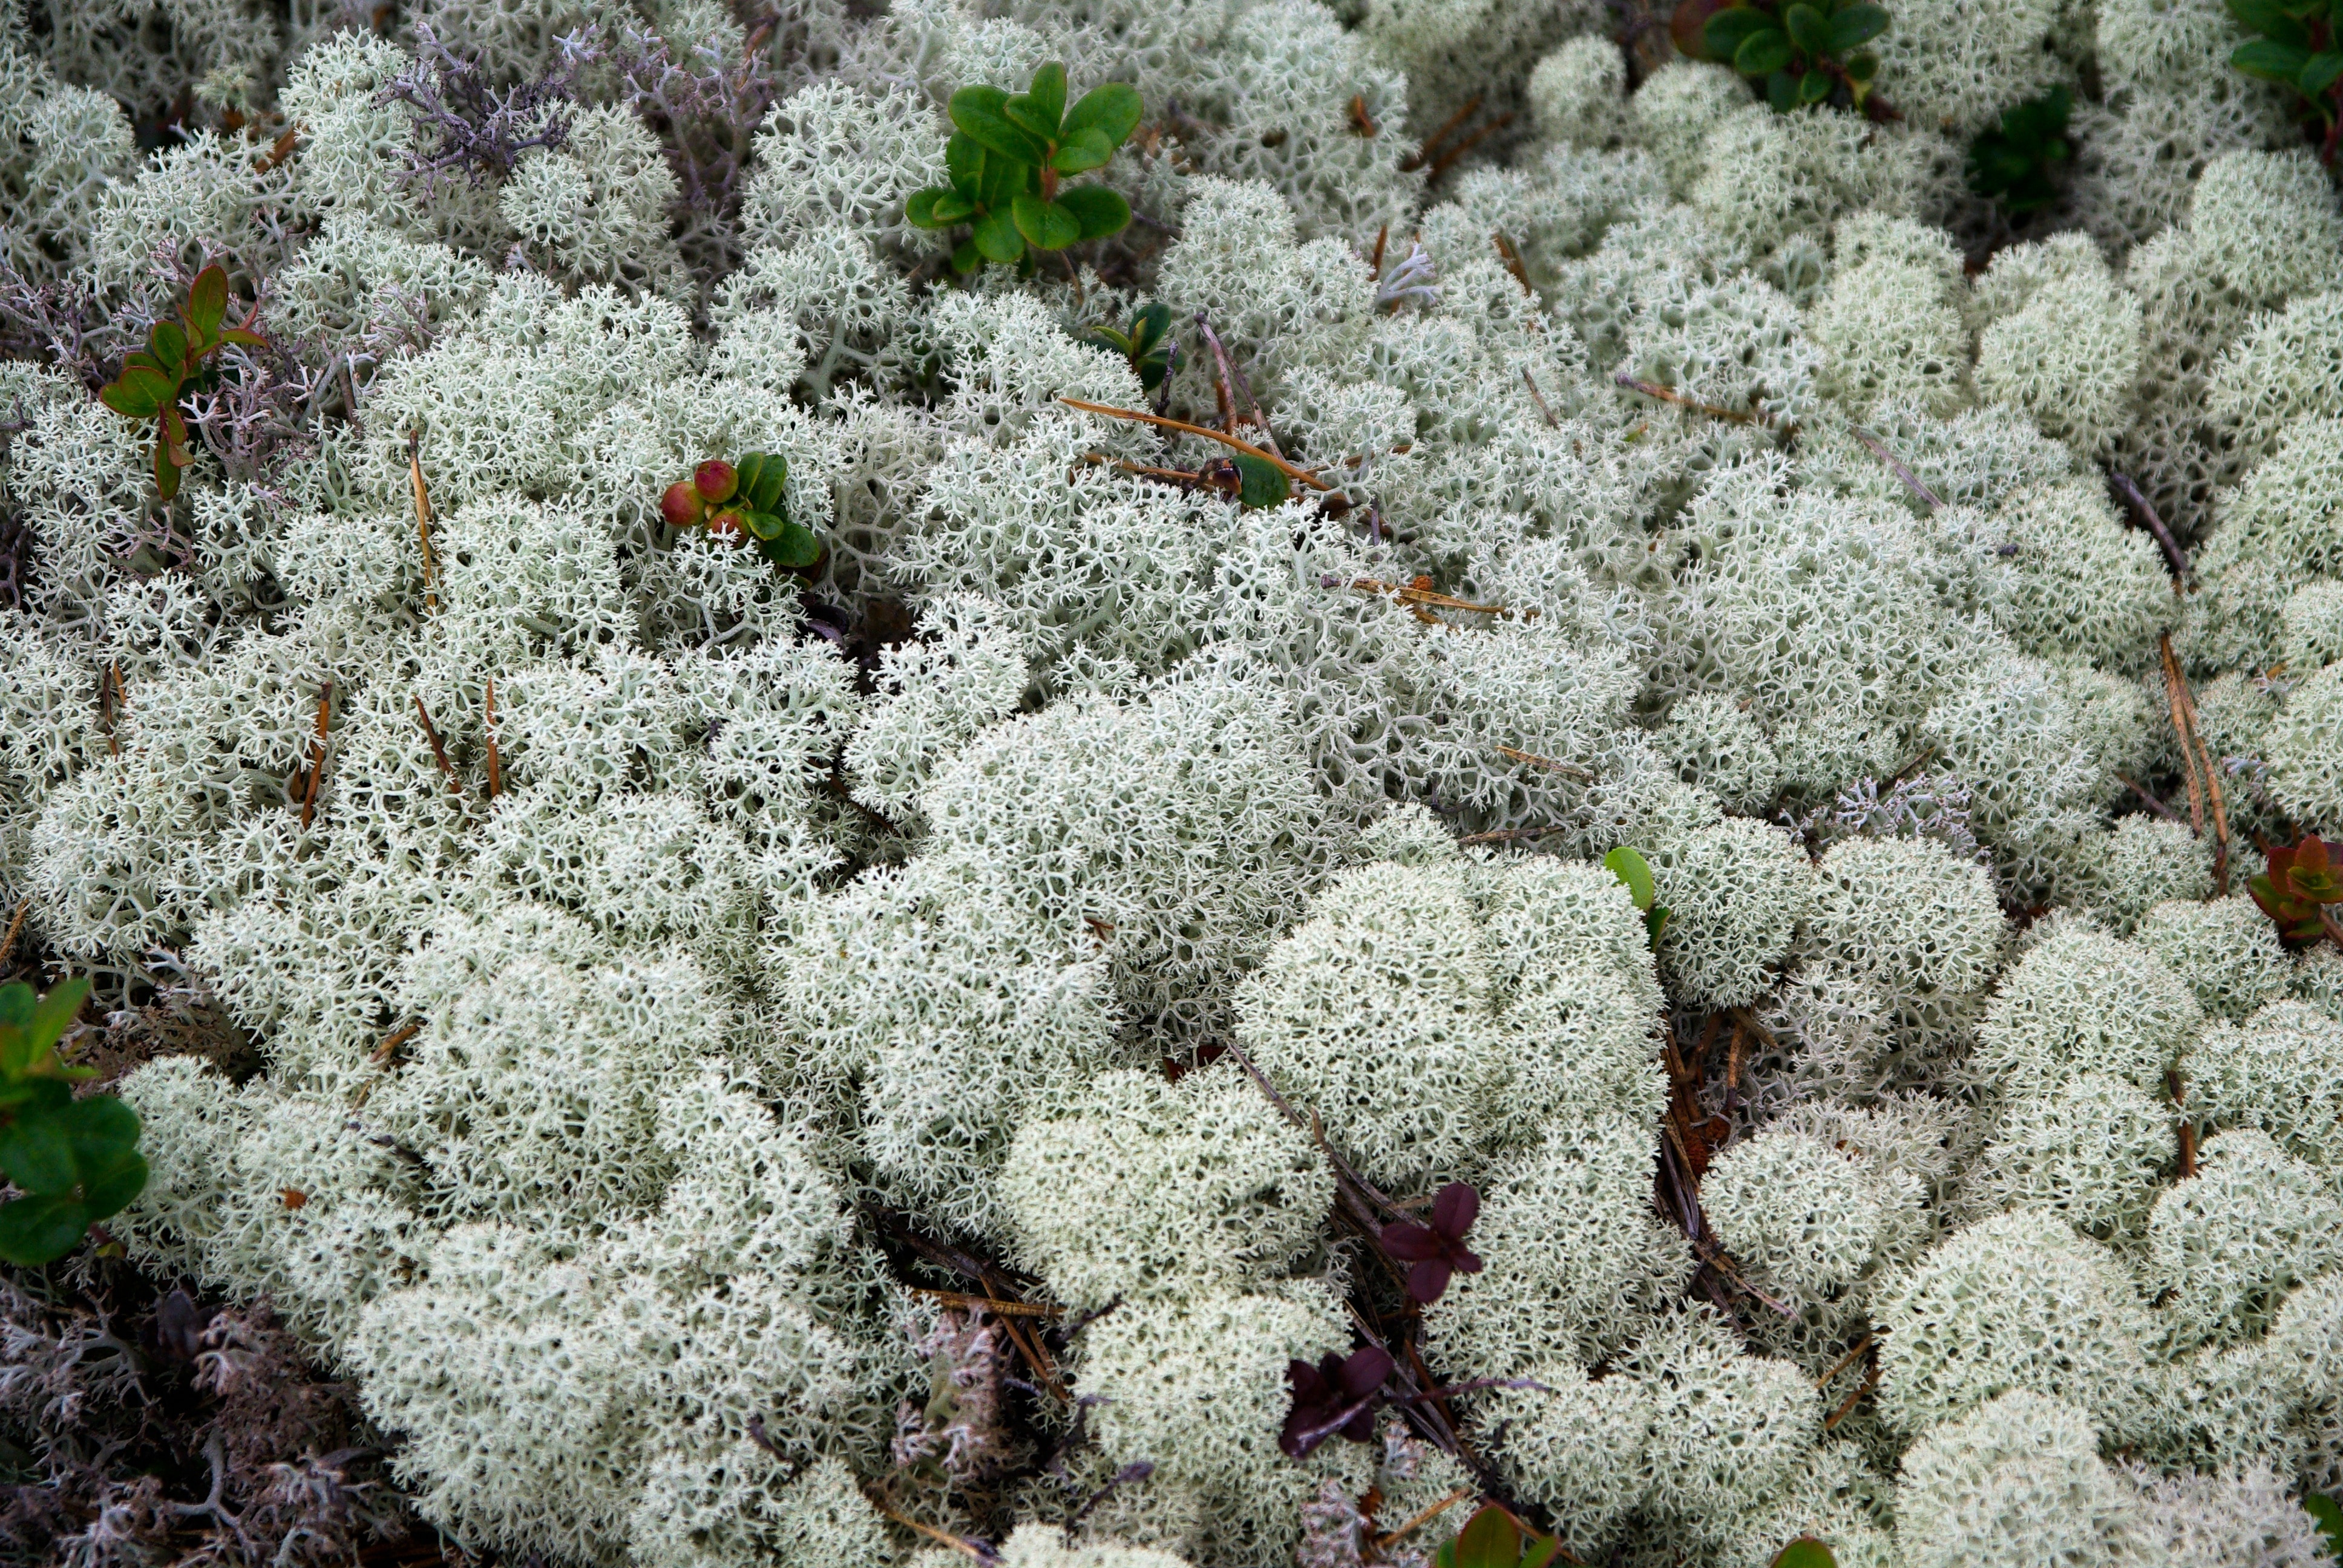 white corals